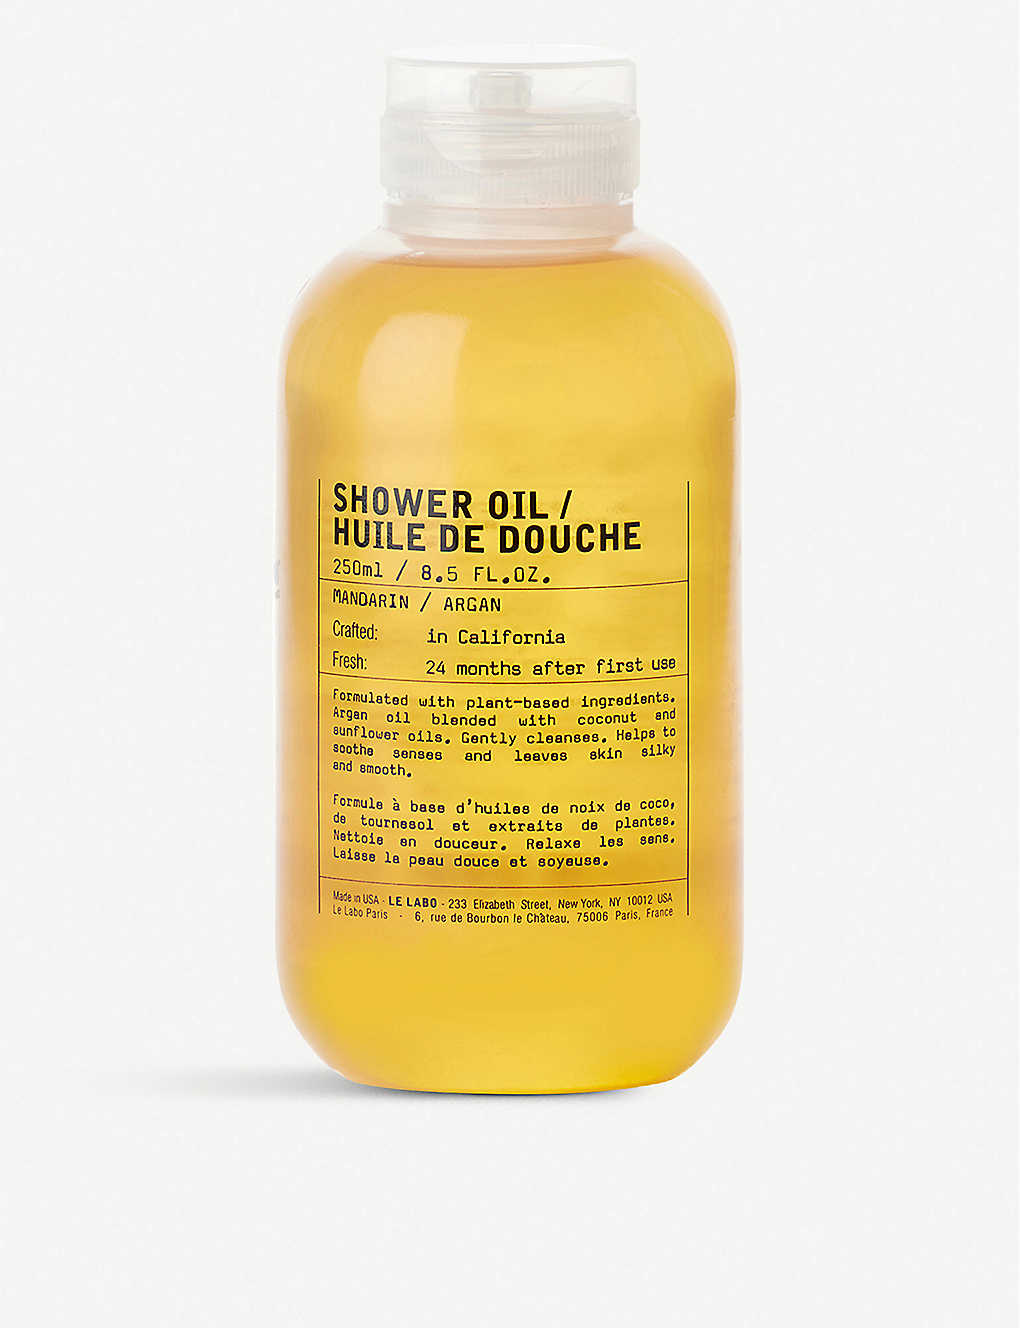 Mandarin shower oil 250ml